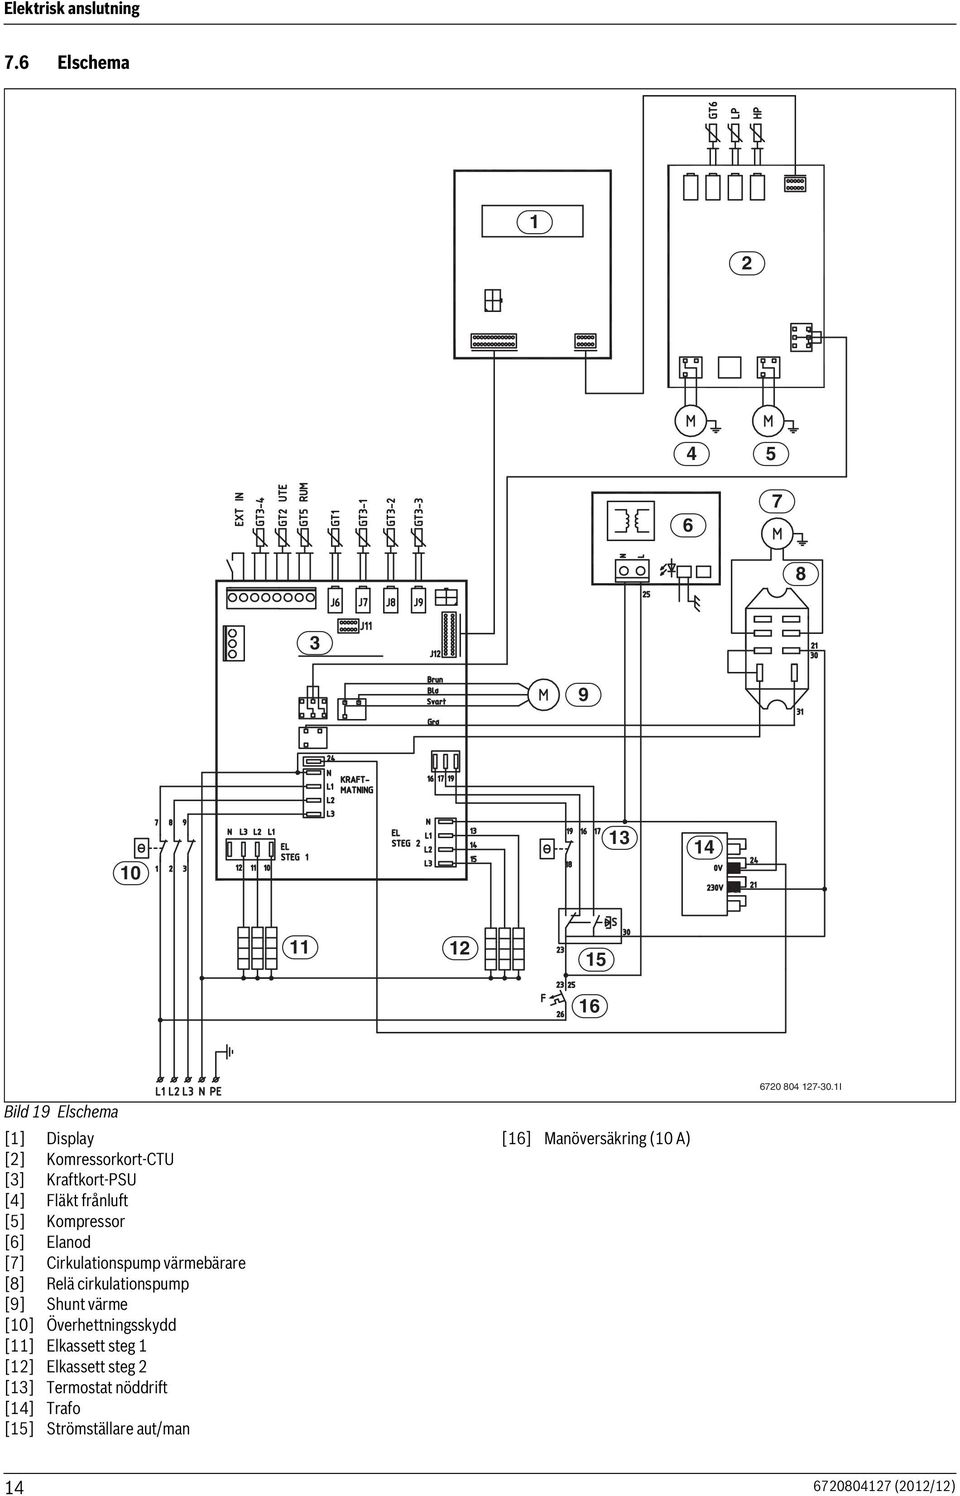 Fläkt frånluft [5] Kompressor [6] Elanod [7] Cirkulationspump värmebärare [8] Relä cirkulationspump